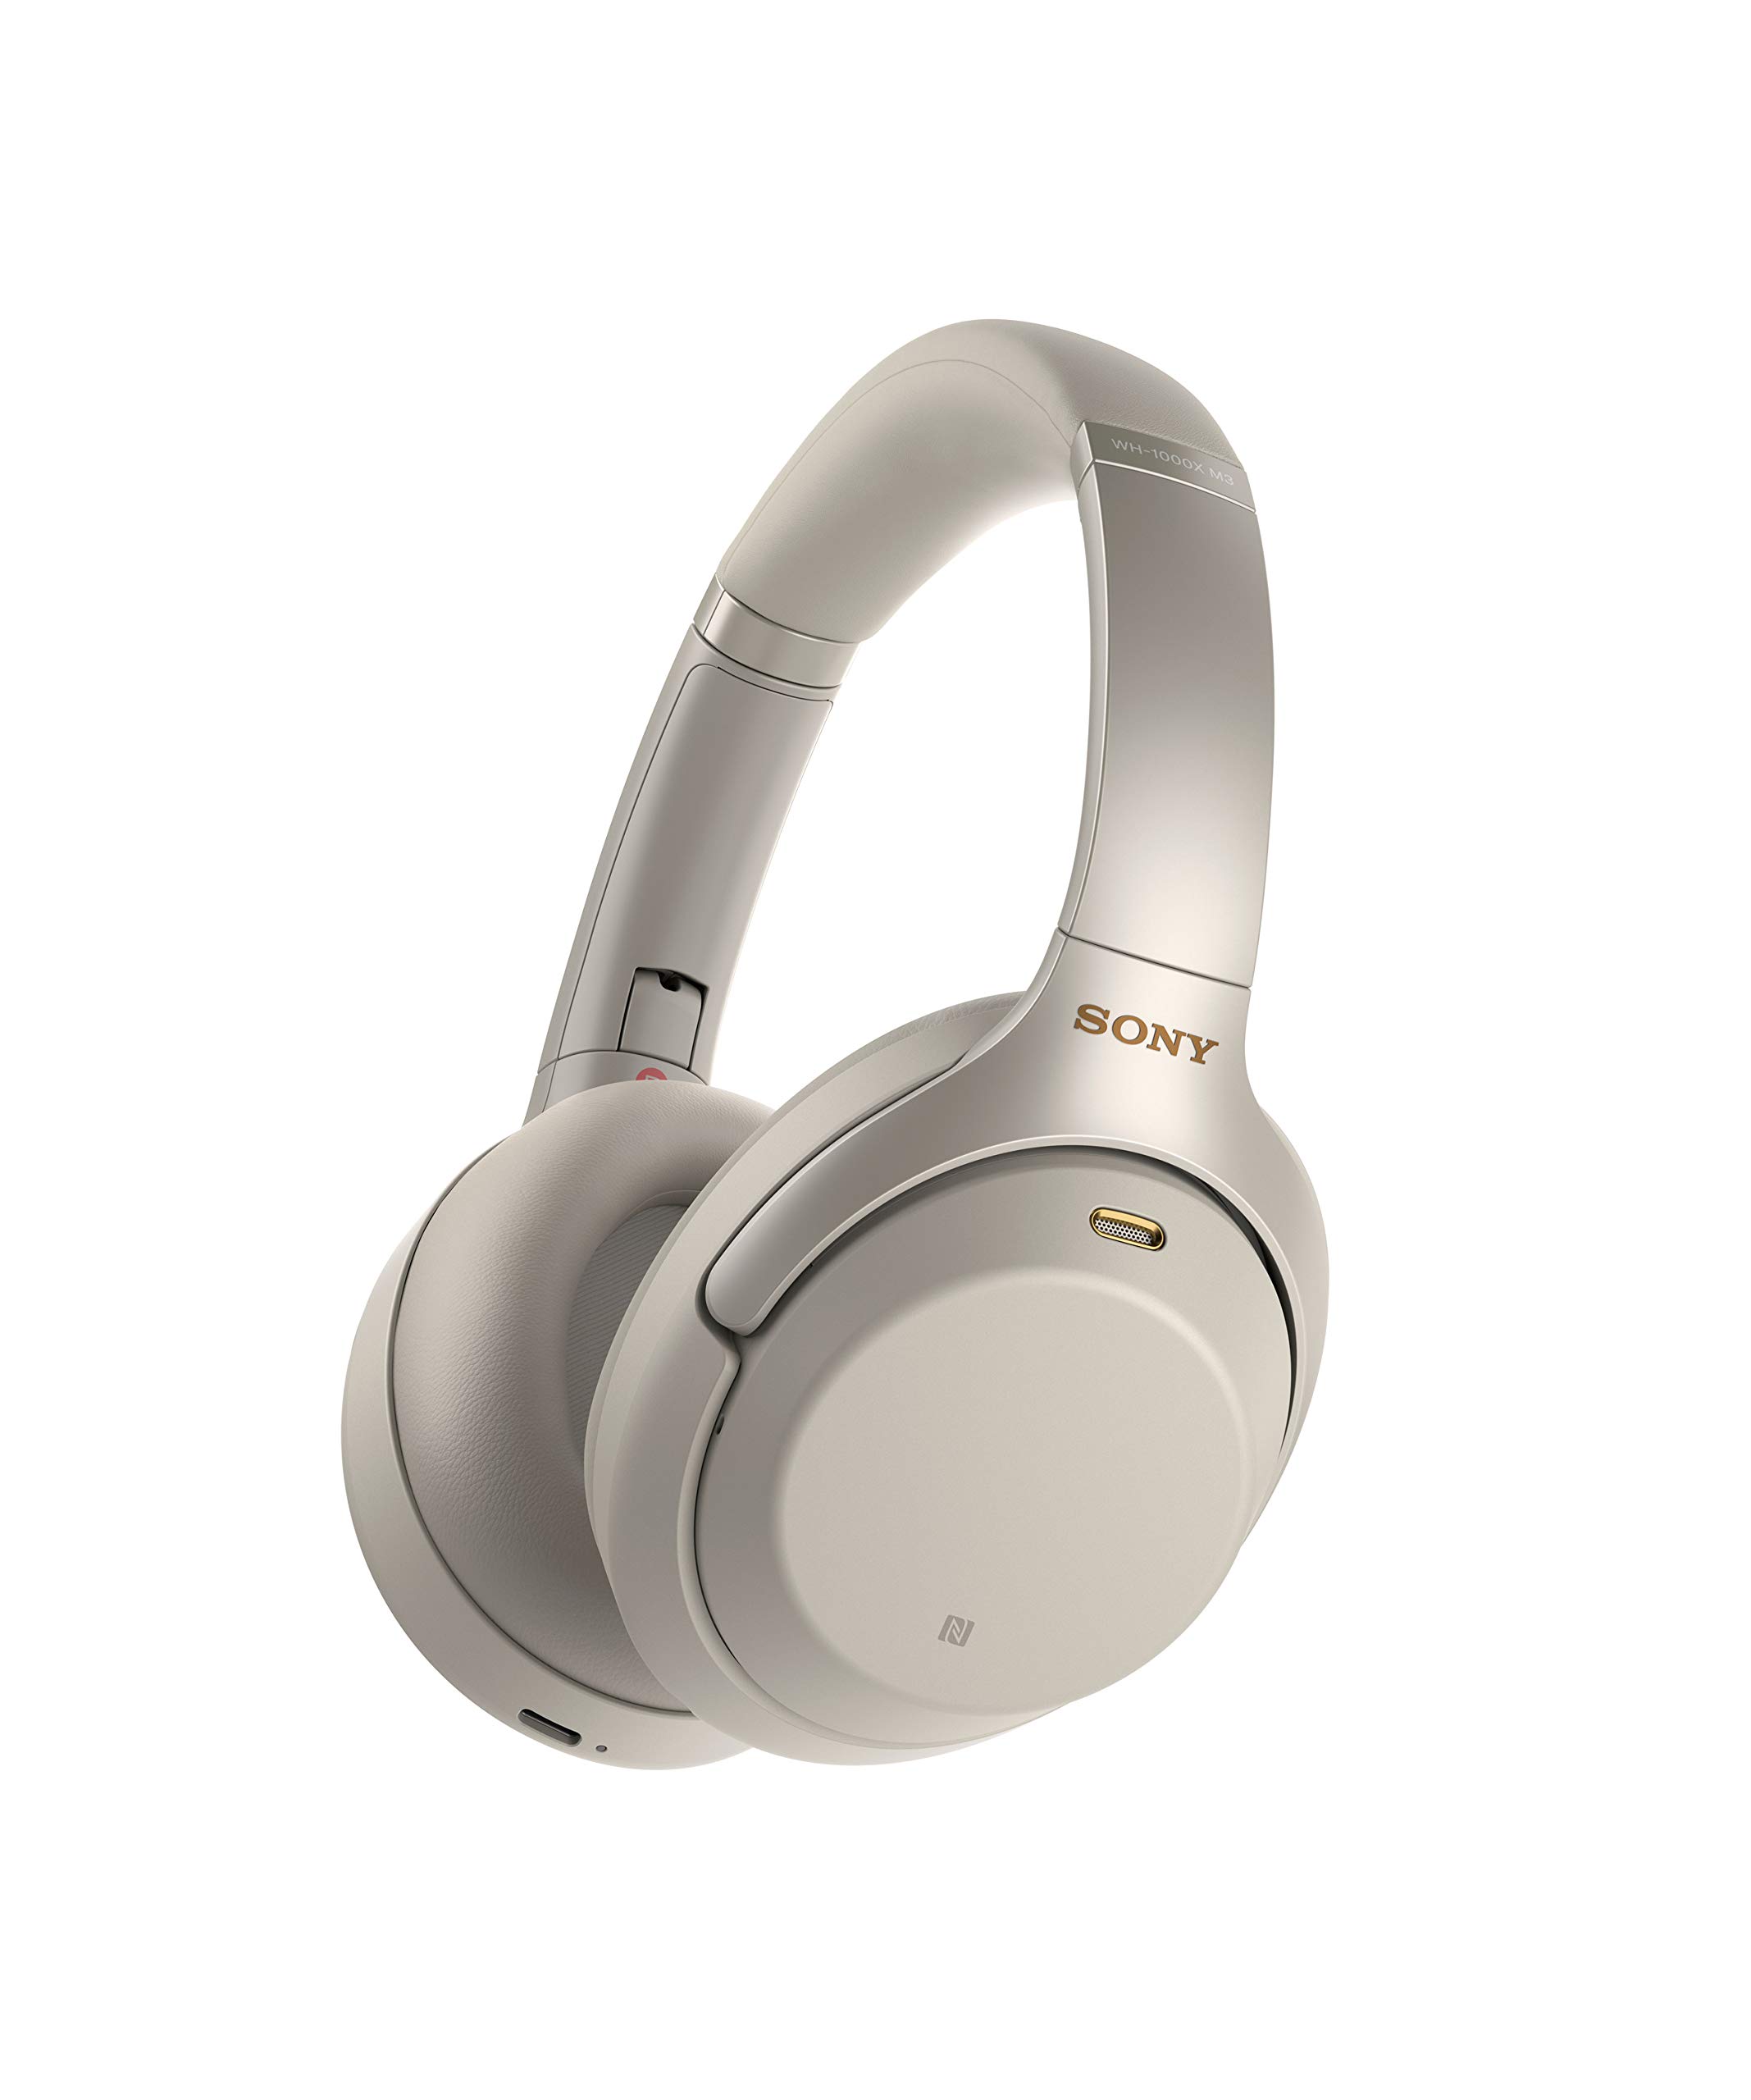 Sony WH-1000XM3 无线降噪立体声耳机(国际版/卖家保证) (银色)